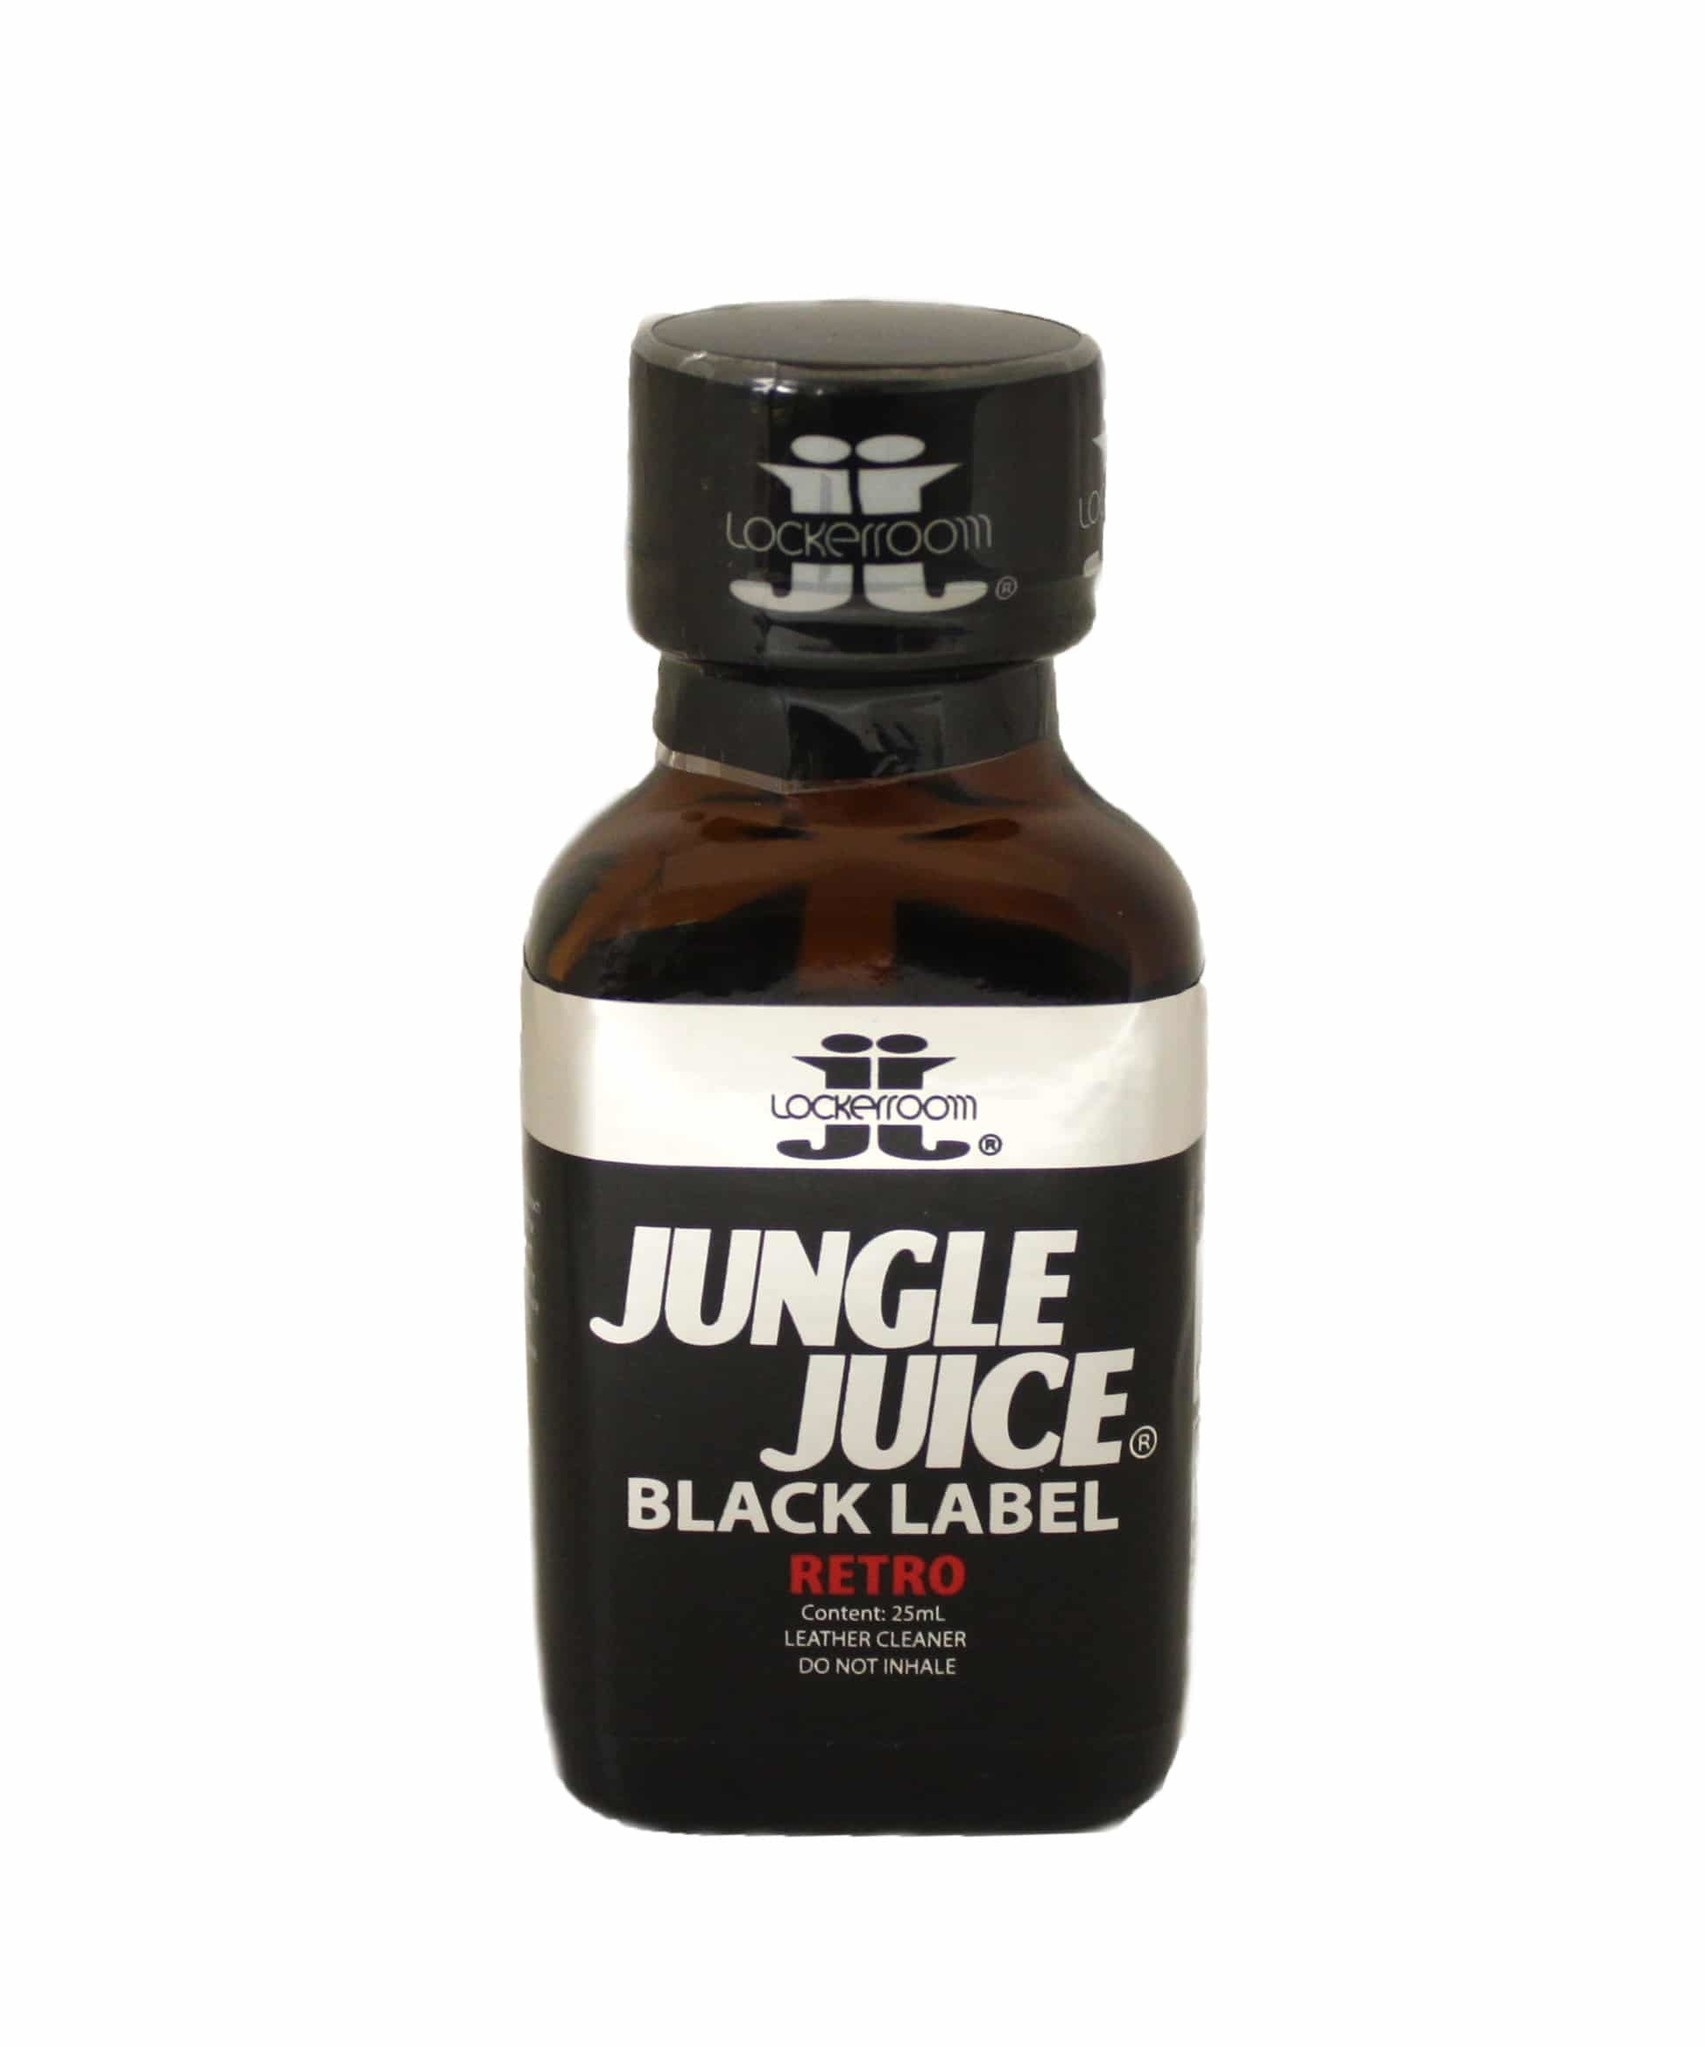 Jungle juice popper review